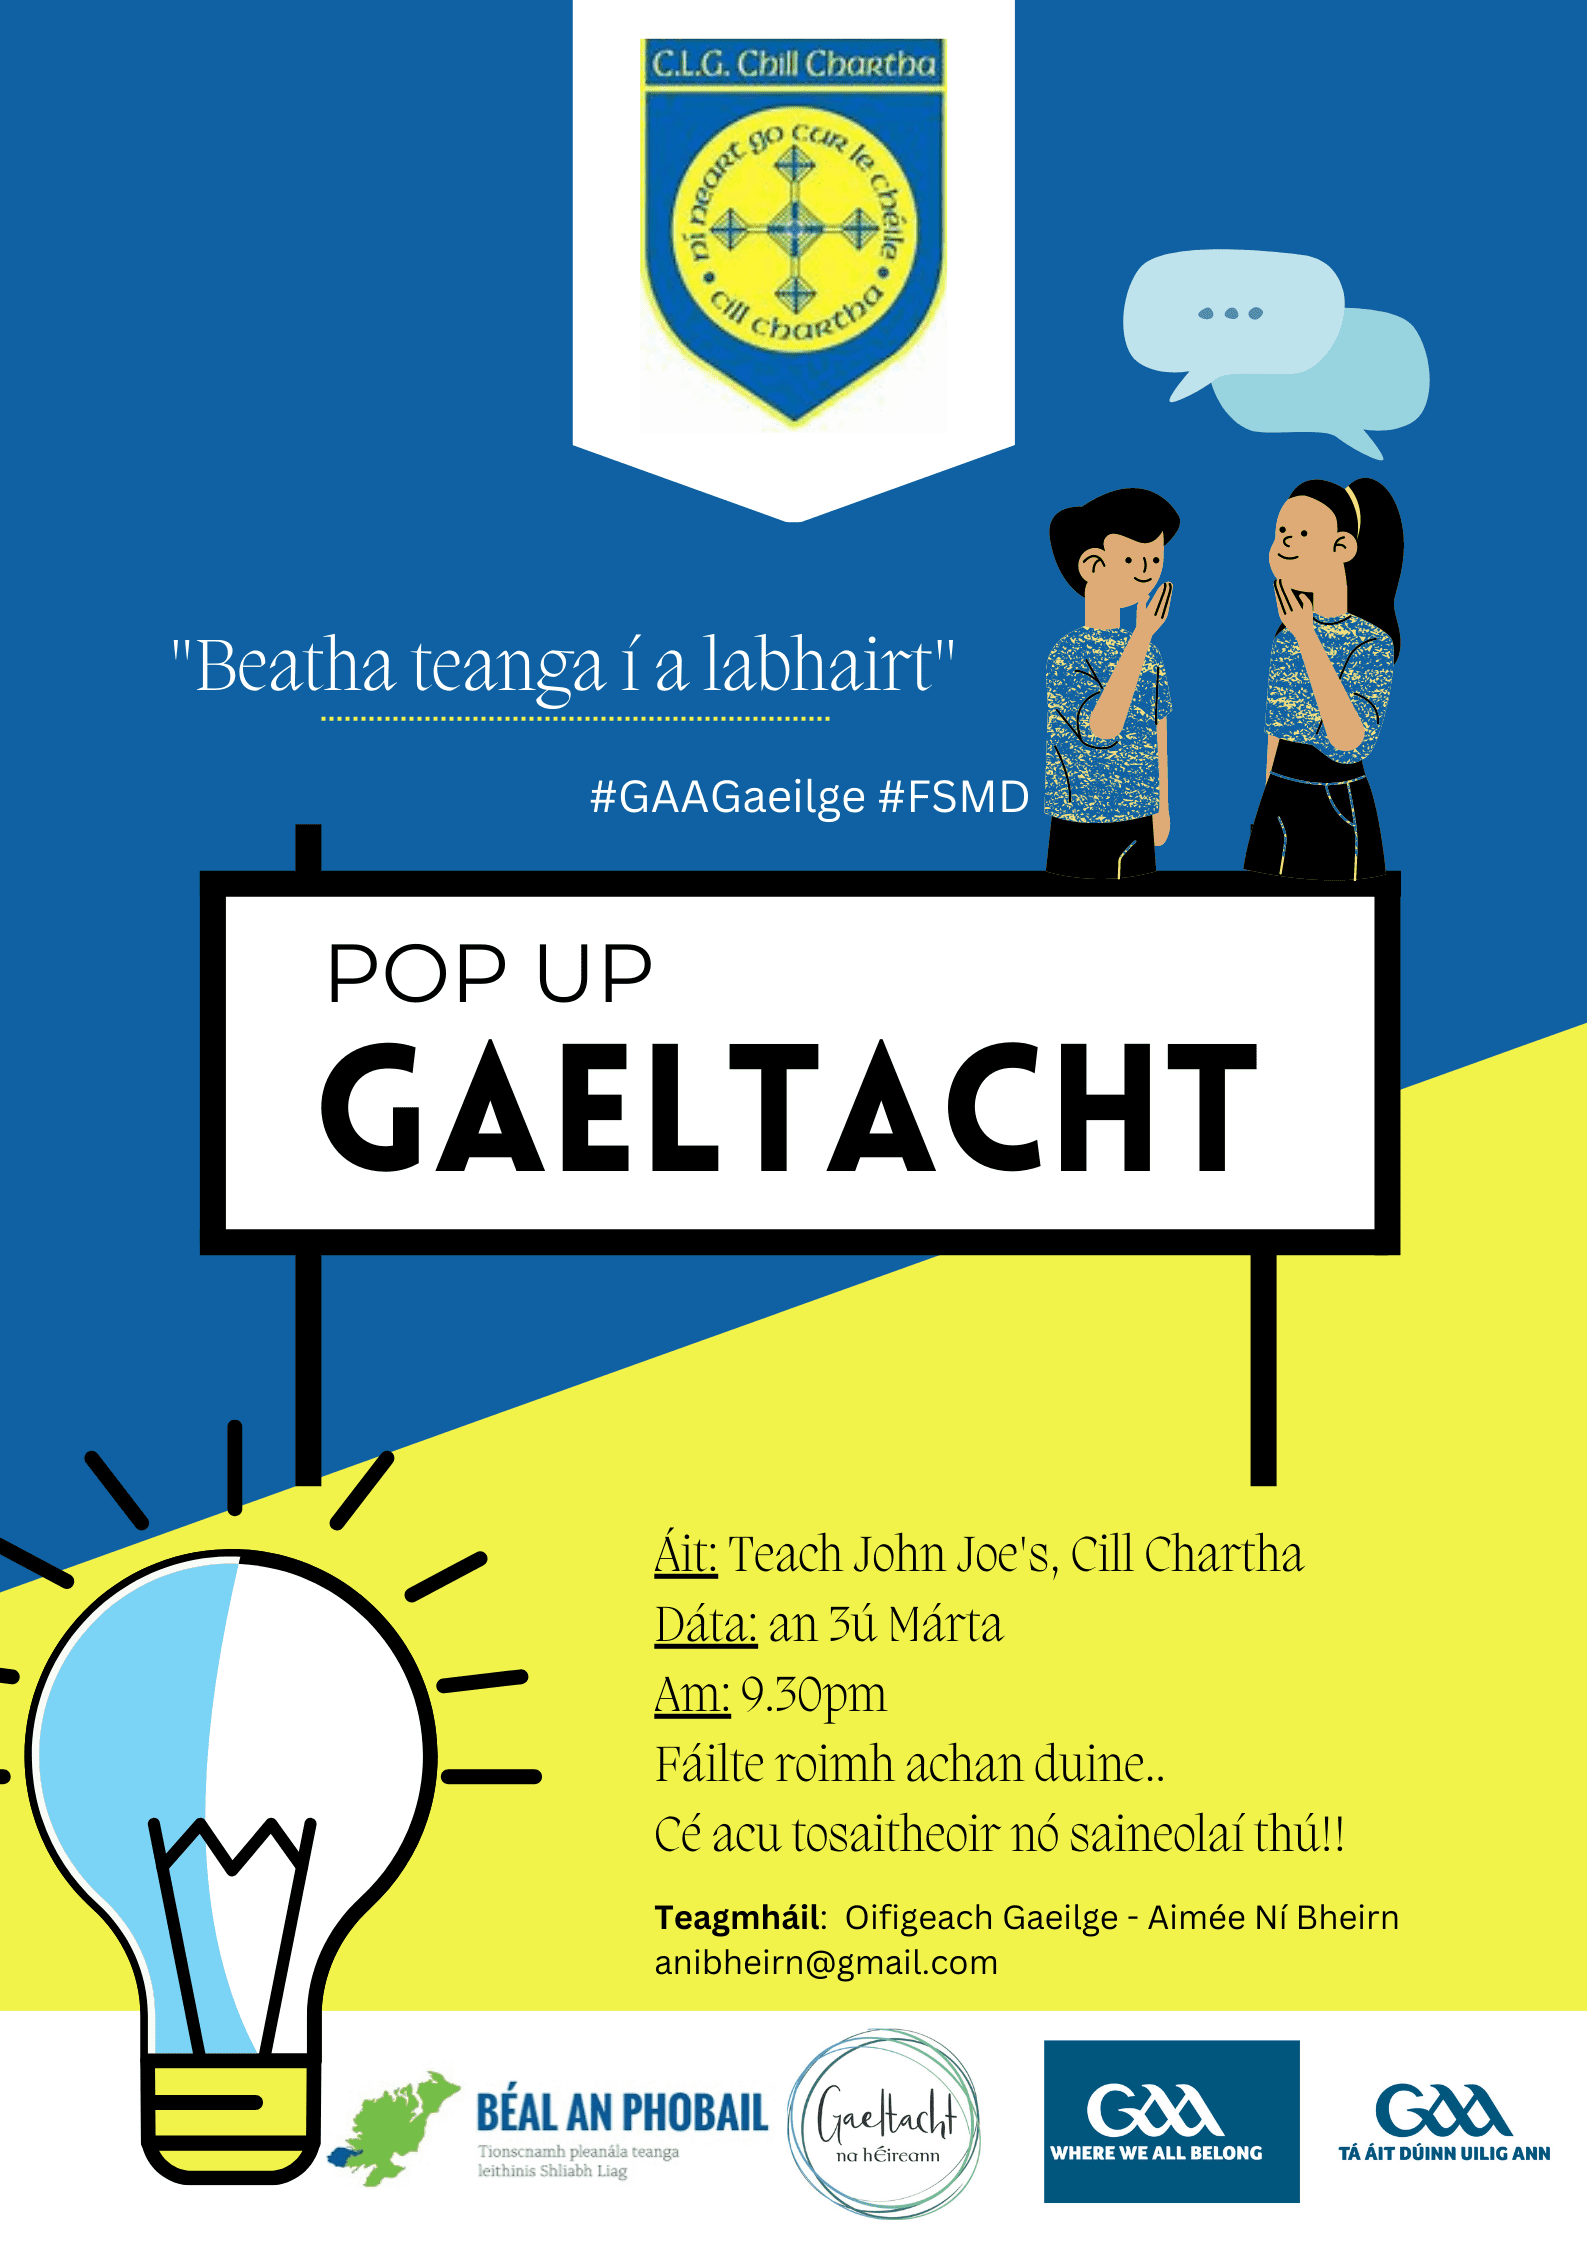 Pop-up Gaeltacht – CLG Chill Chartha